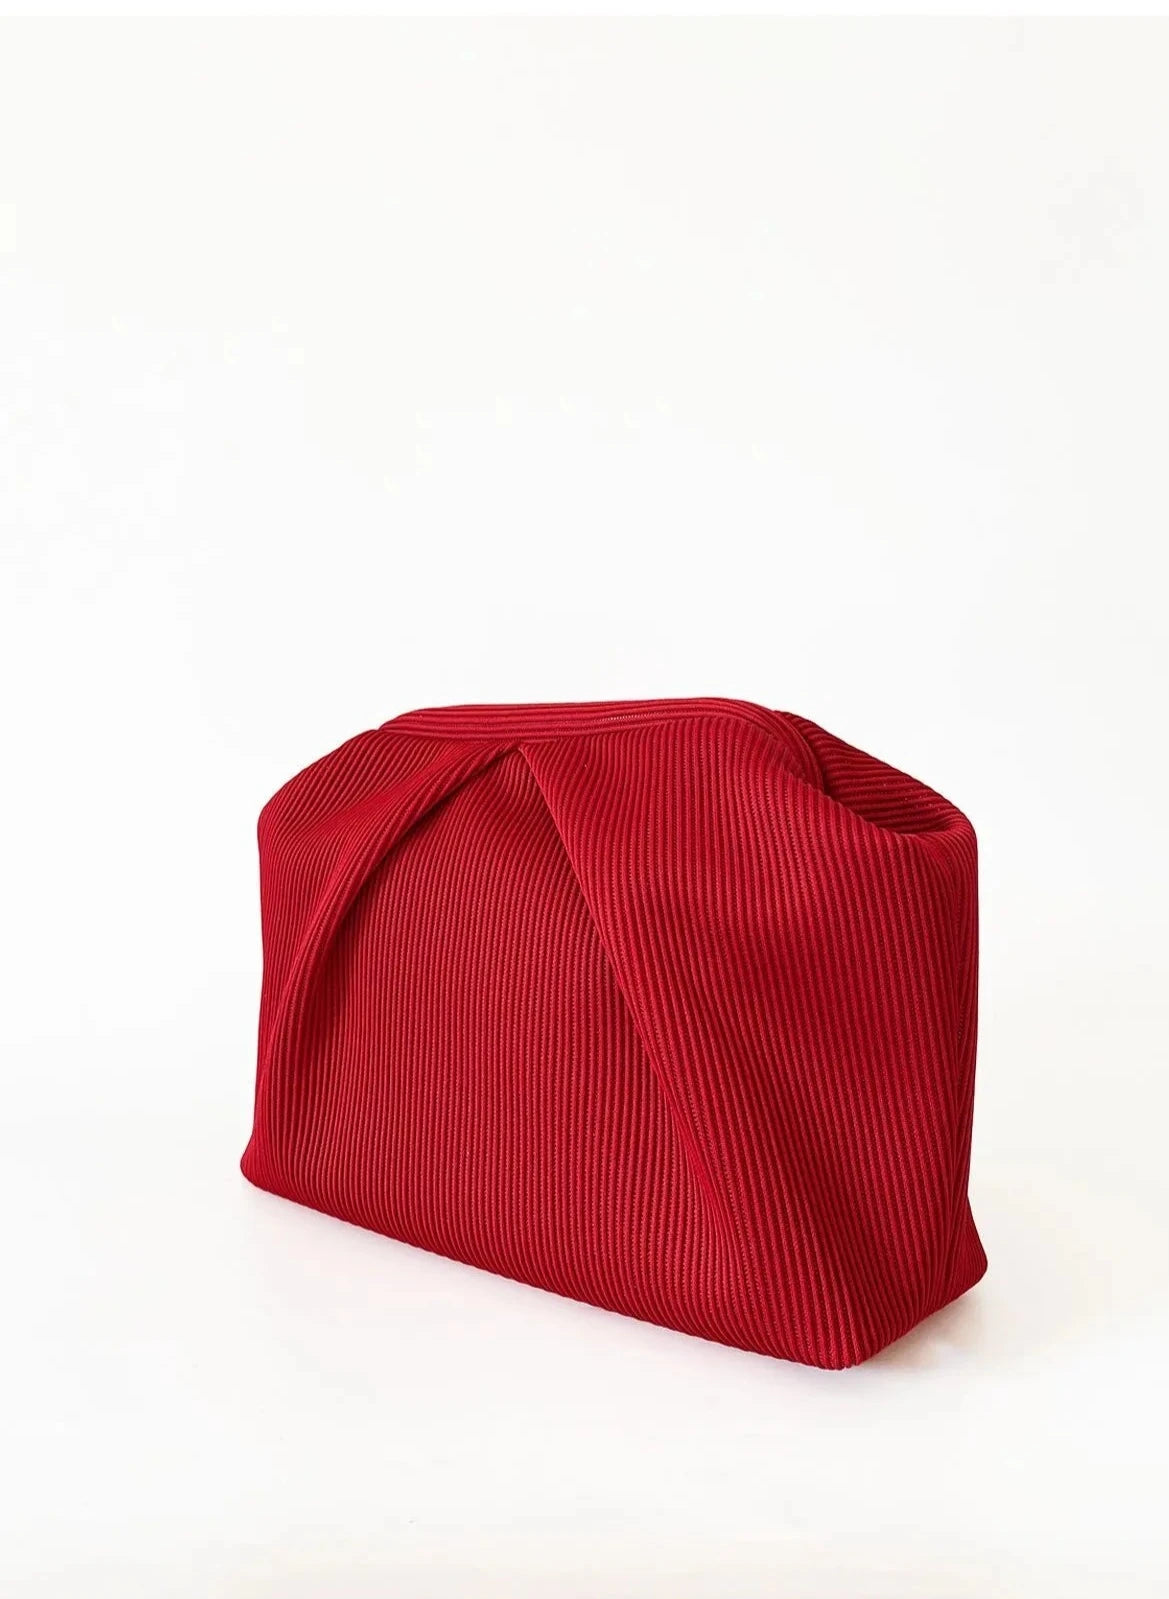 Elegant Red Pleated Clutch Handbag clutch LUNARITY GARAGE   